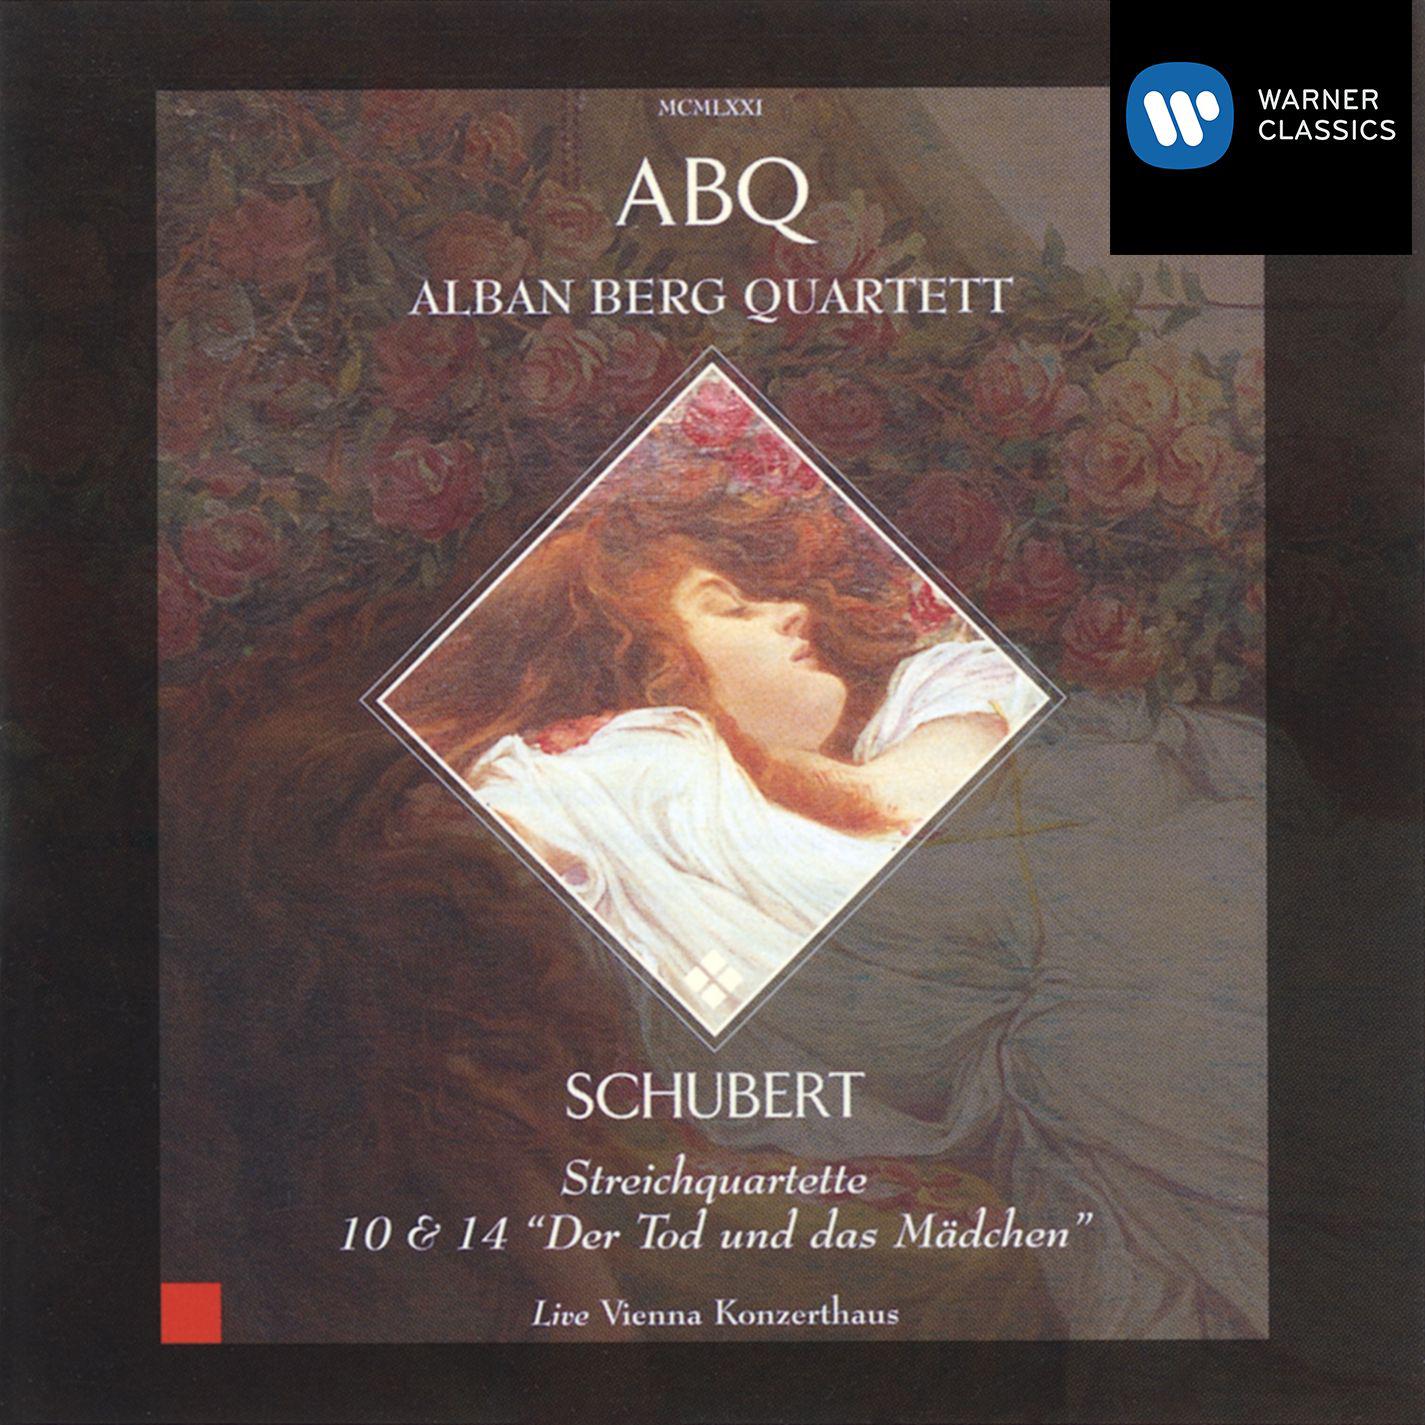 String Quartet No. 14 in D Minor, D. 810 " Der Tod und das M dchen": Allegro